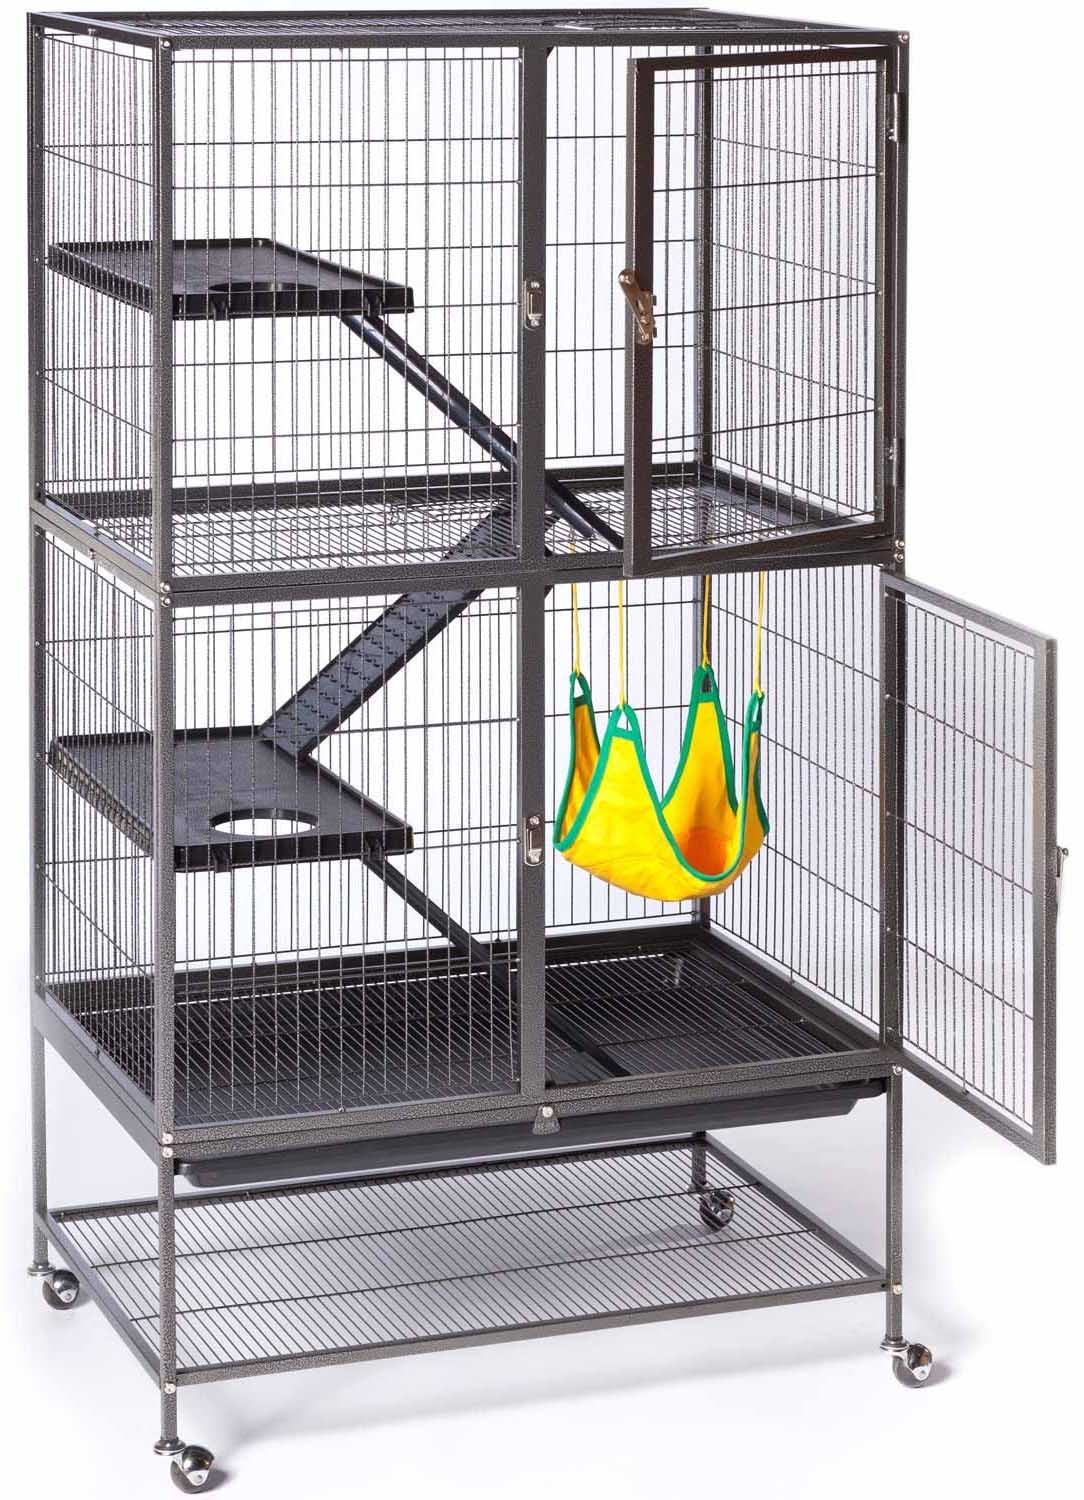 Prevue hendryx rat cage